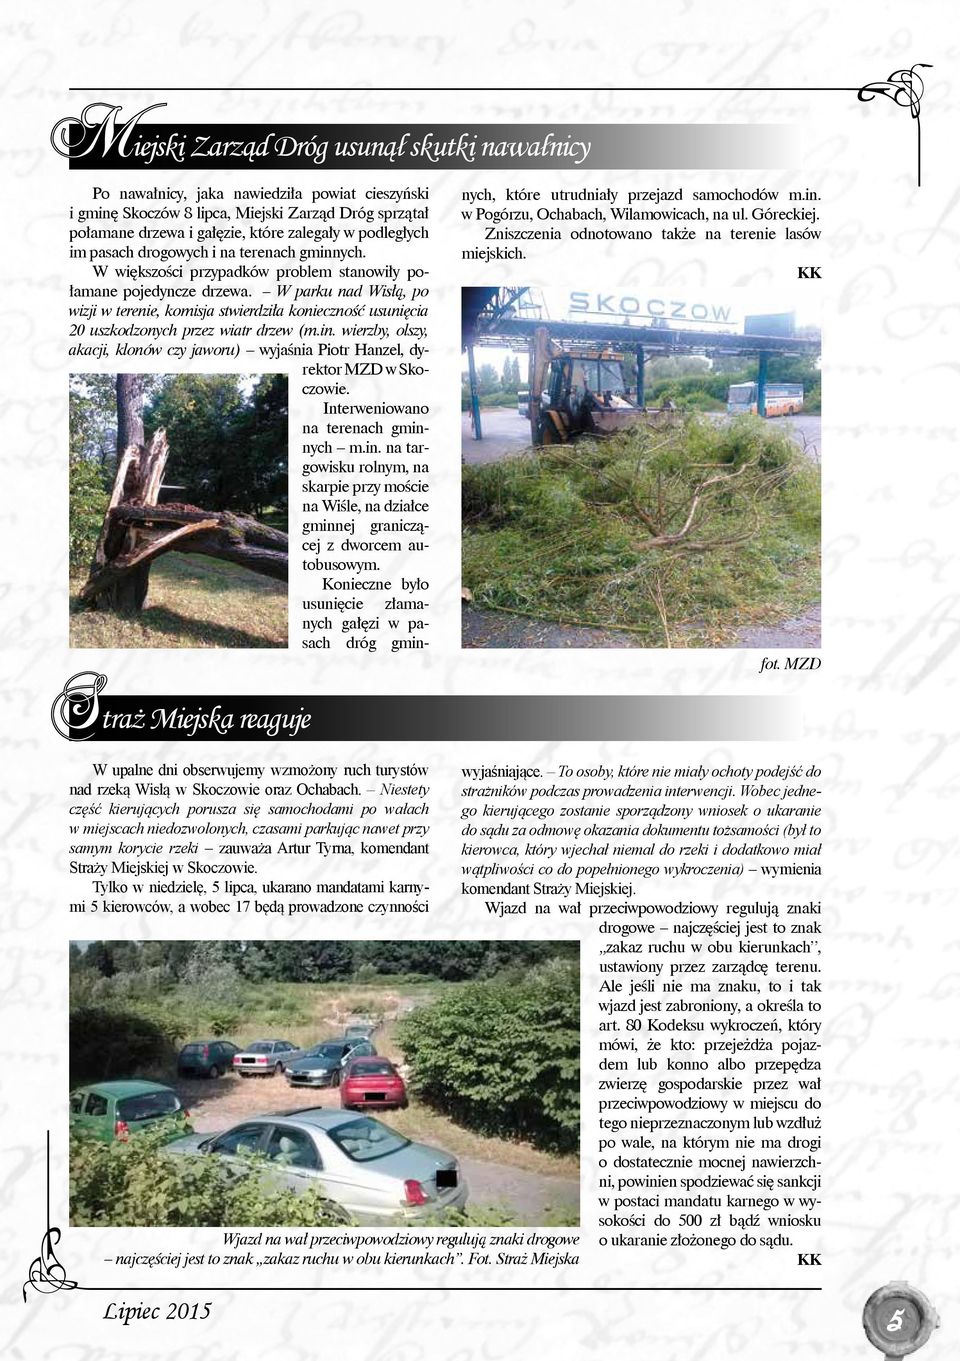 W parku nad Wisłą, po wizji w terenie, komisja stwierdziła konieczność usunięcia 20 uszkodzonych przez wiatr drzew (m.in.